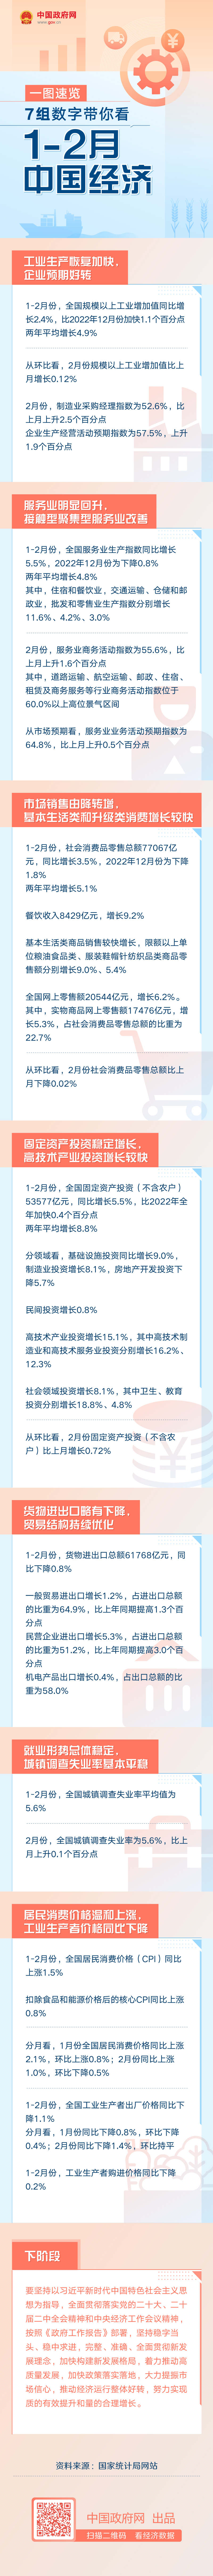 7组数字带你看1—2月份中国经济